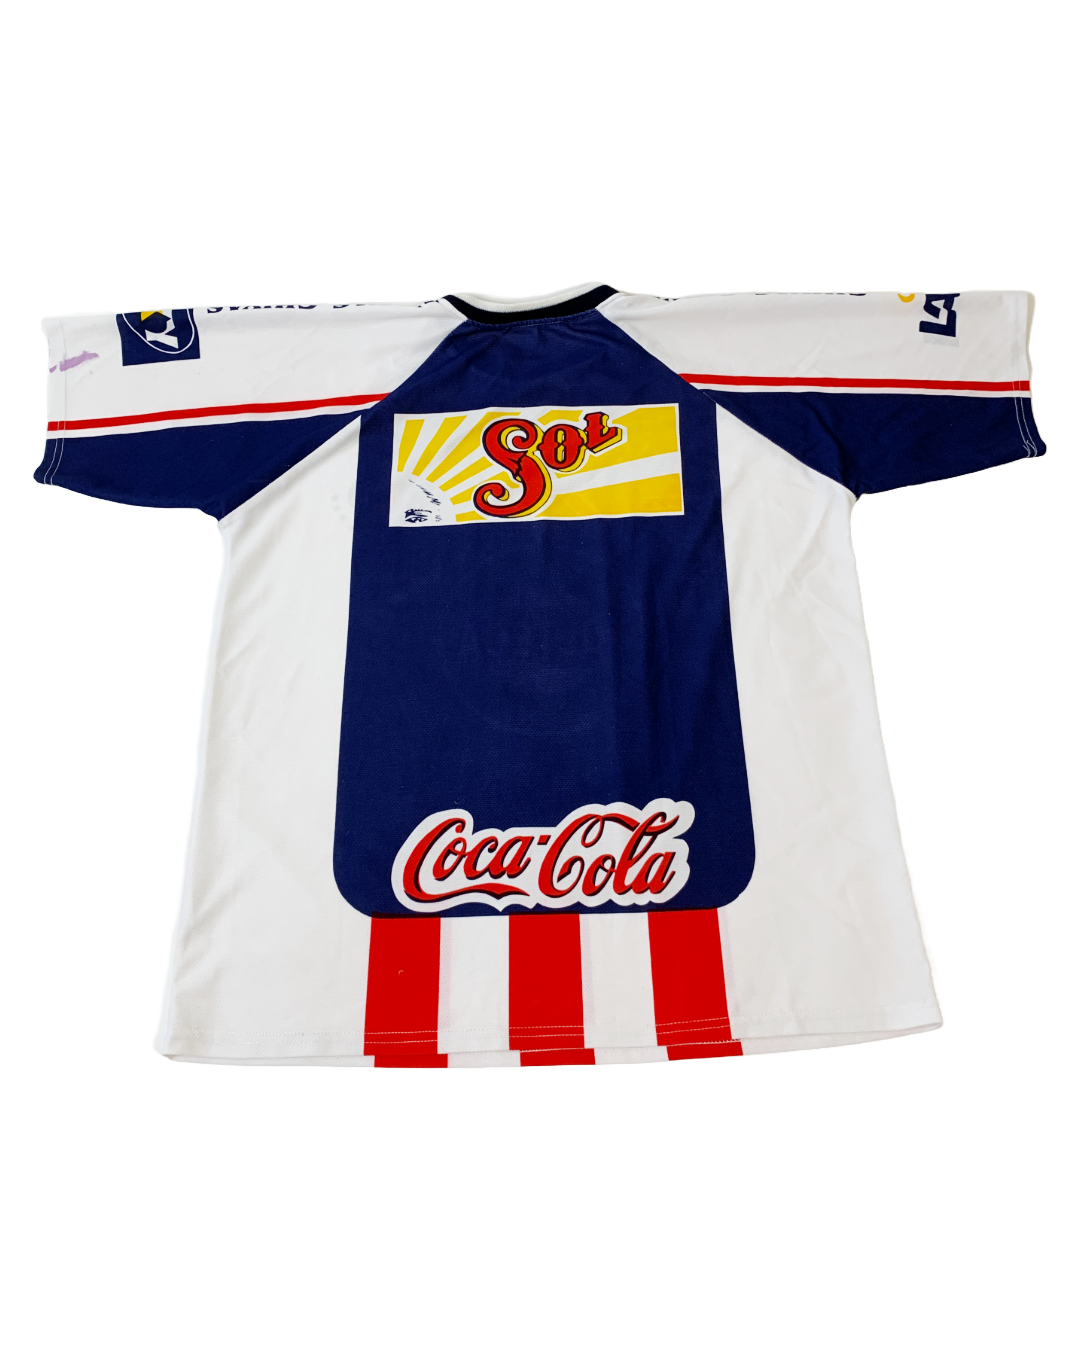 Chivas de Guadalajara Vintage Jersey - XL